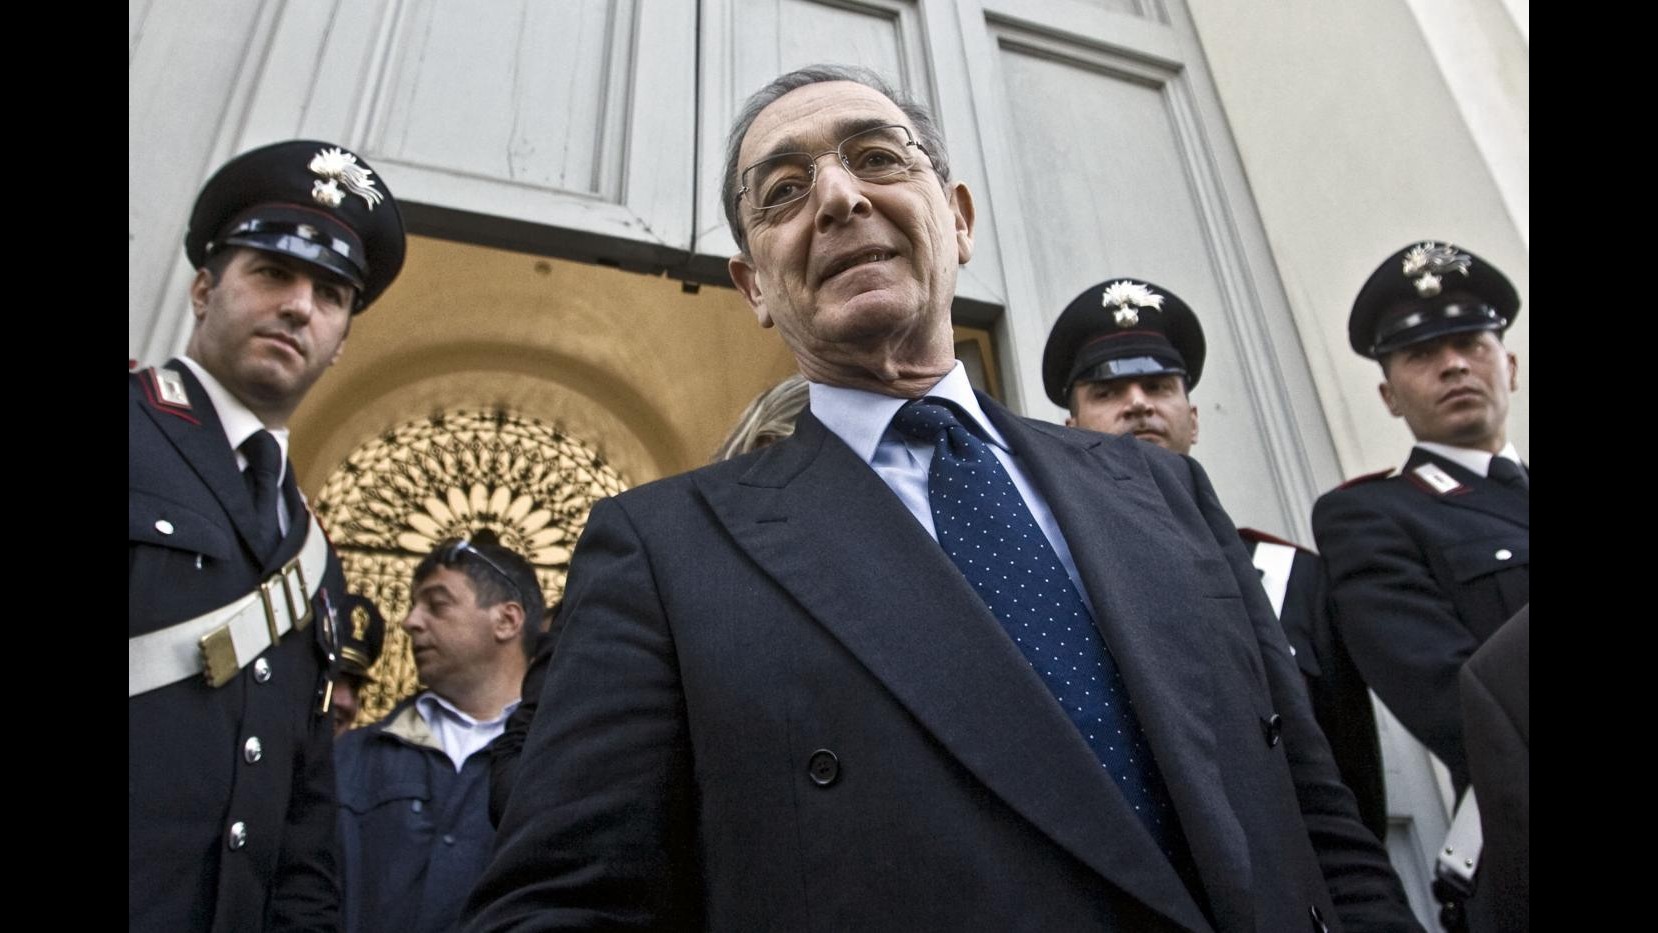 La Fiamma: L’avvocato Taormina capolista al Senato in molte regioni